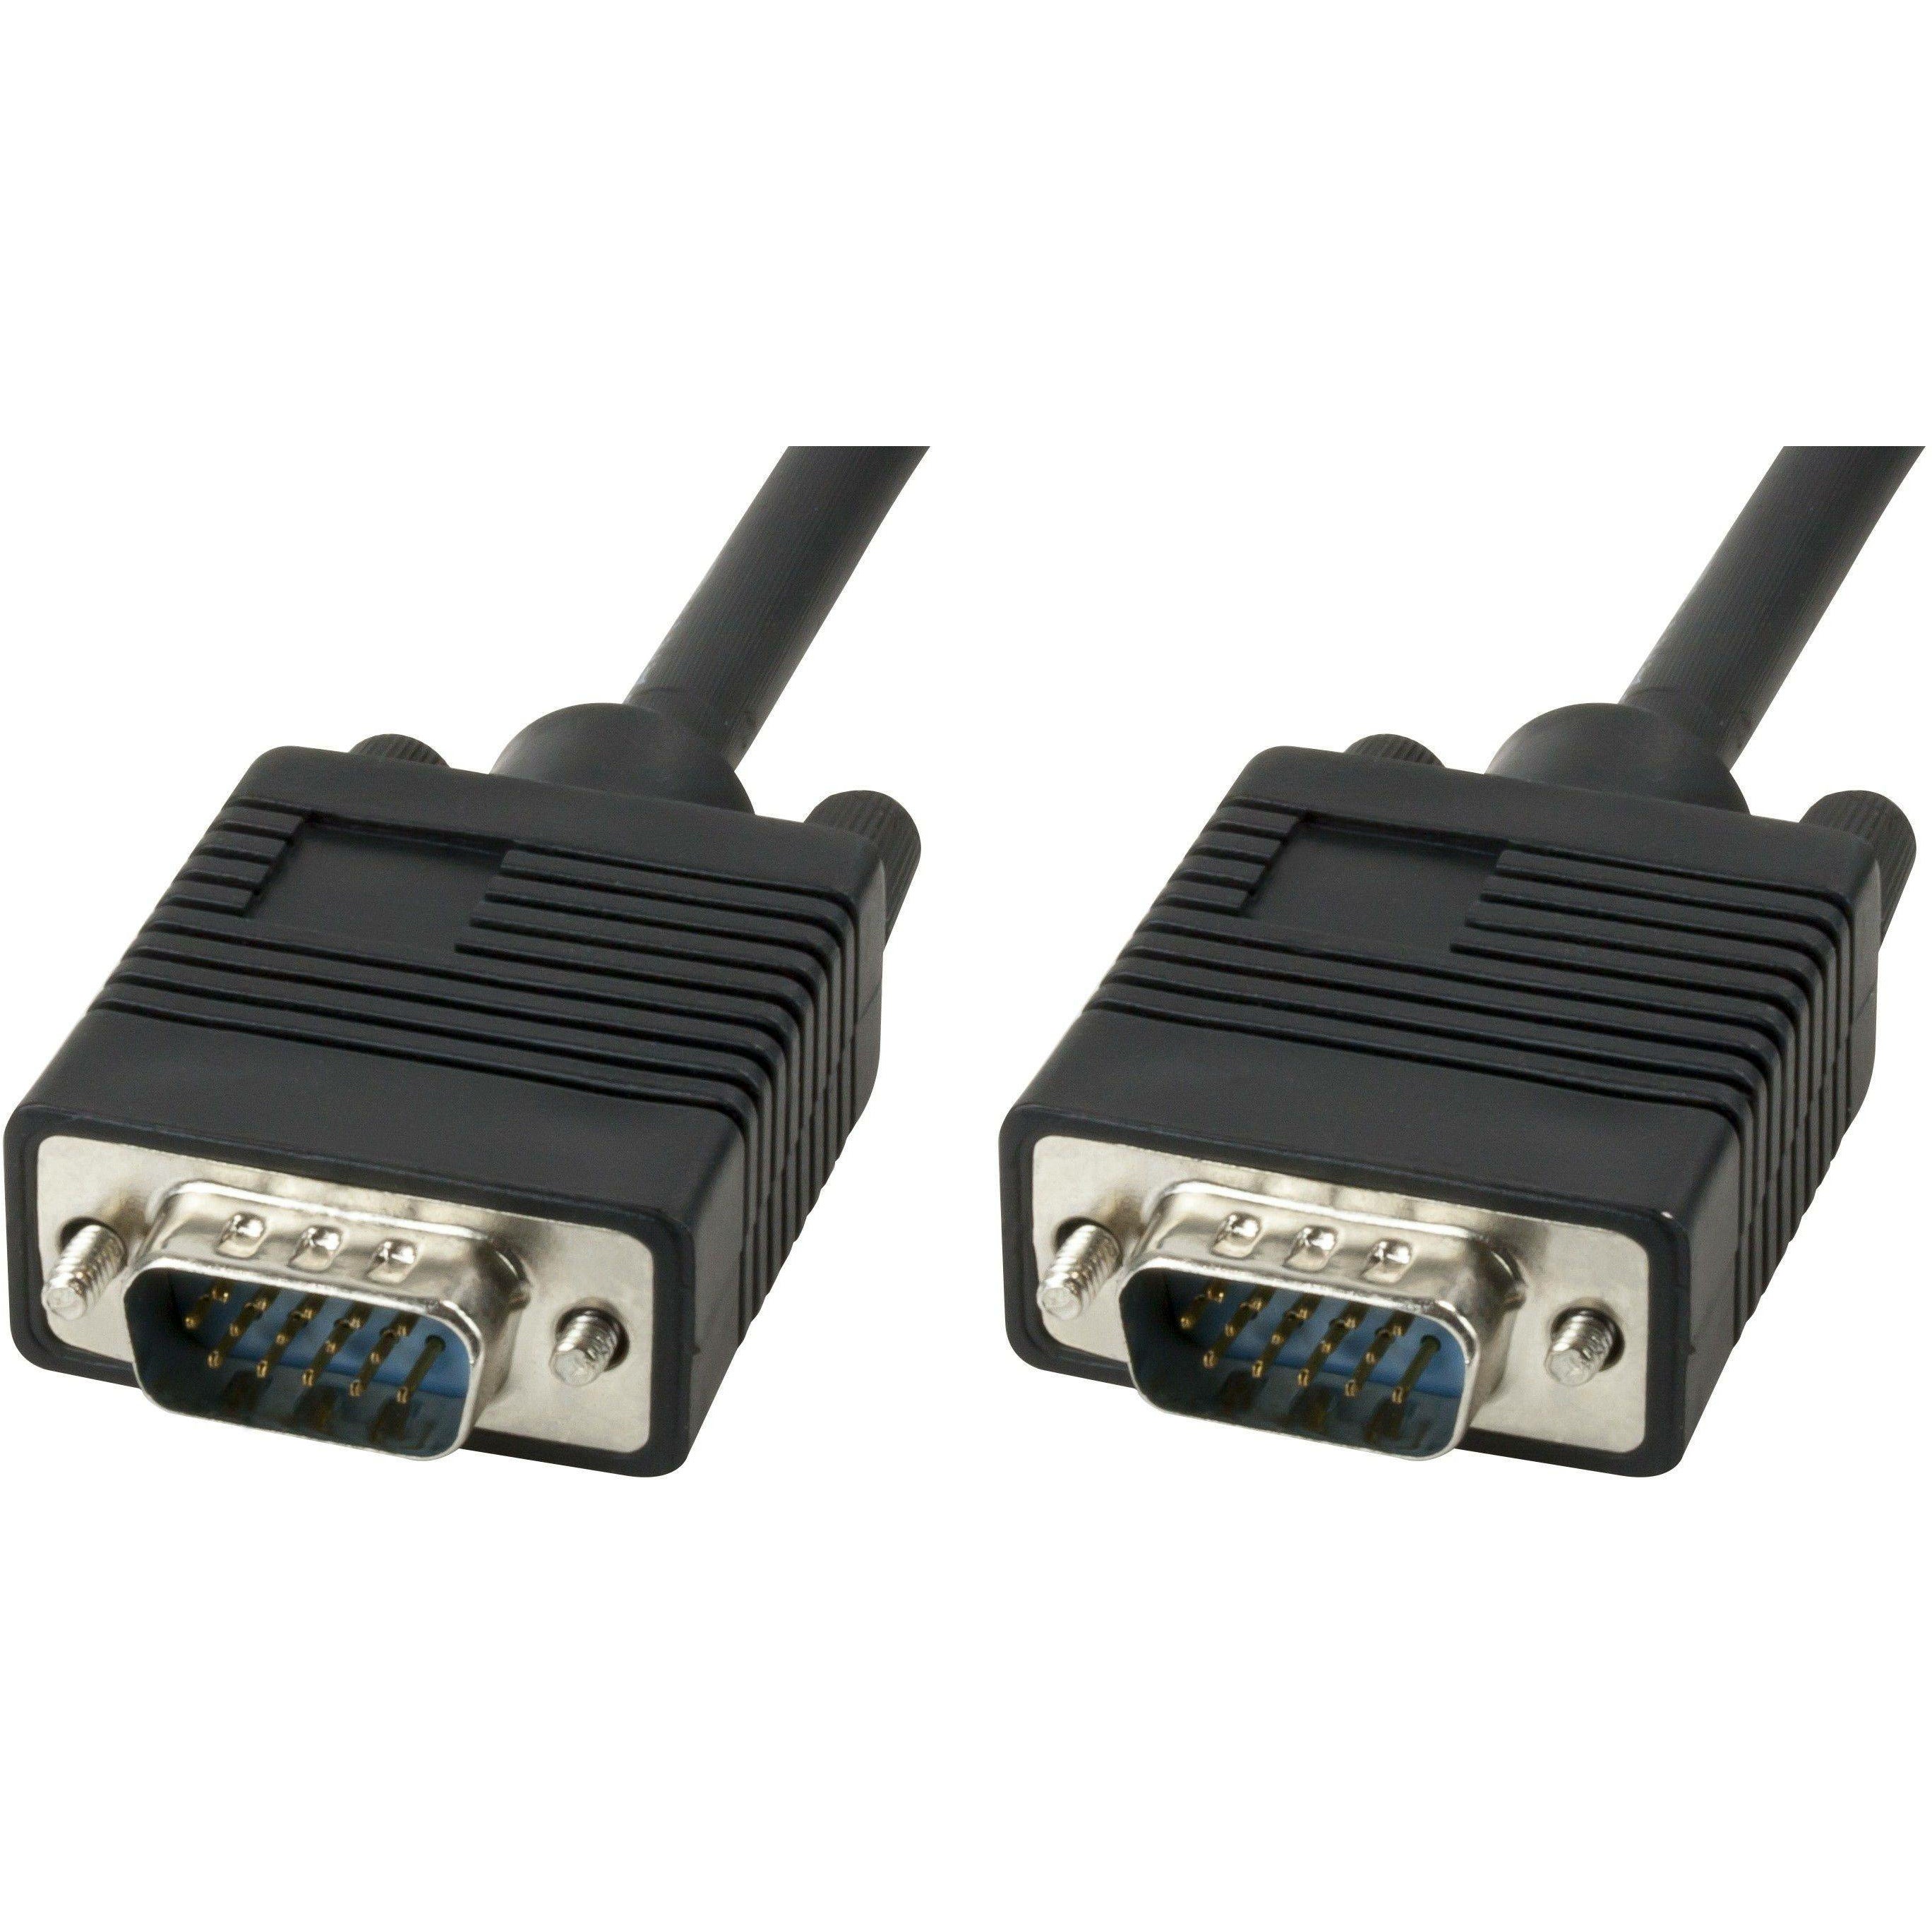 Xtech XTC-308 VGA Monitor Cable Macho a Macho - Gshop Pty